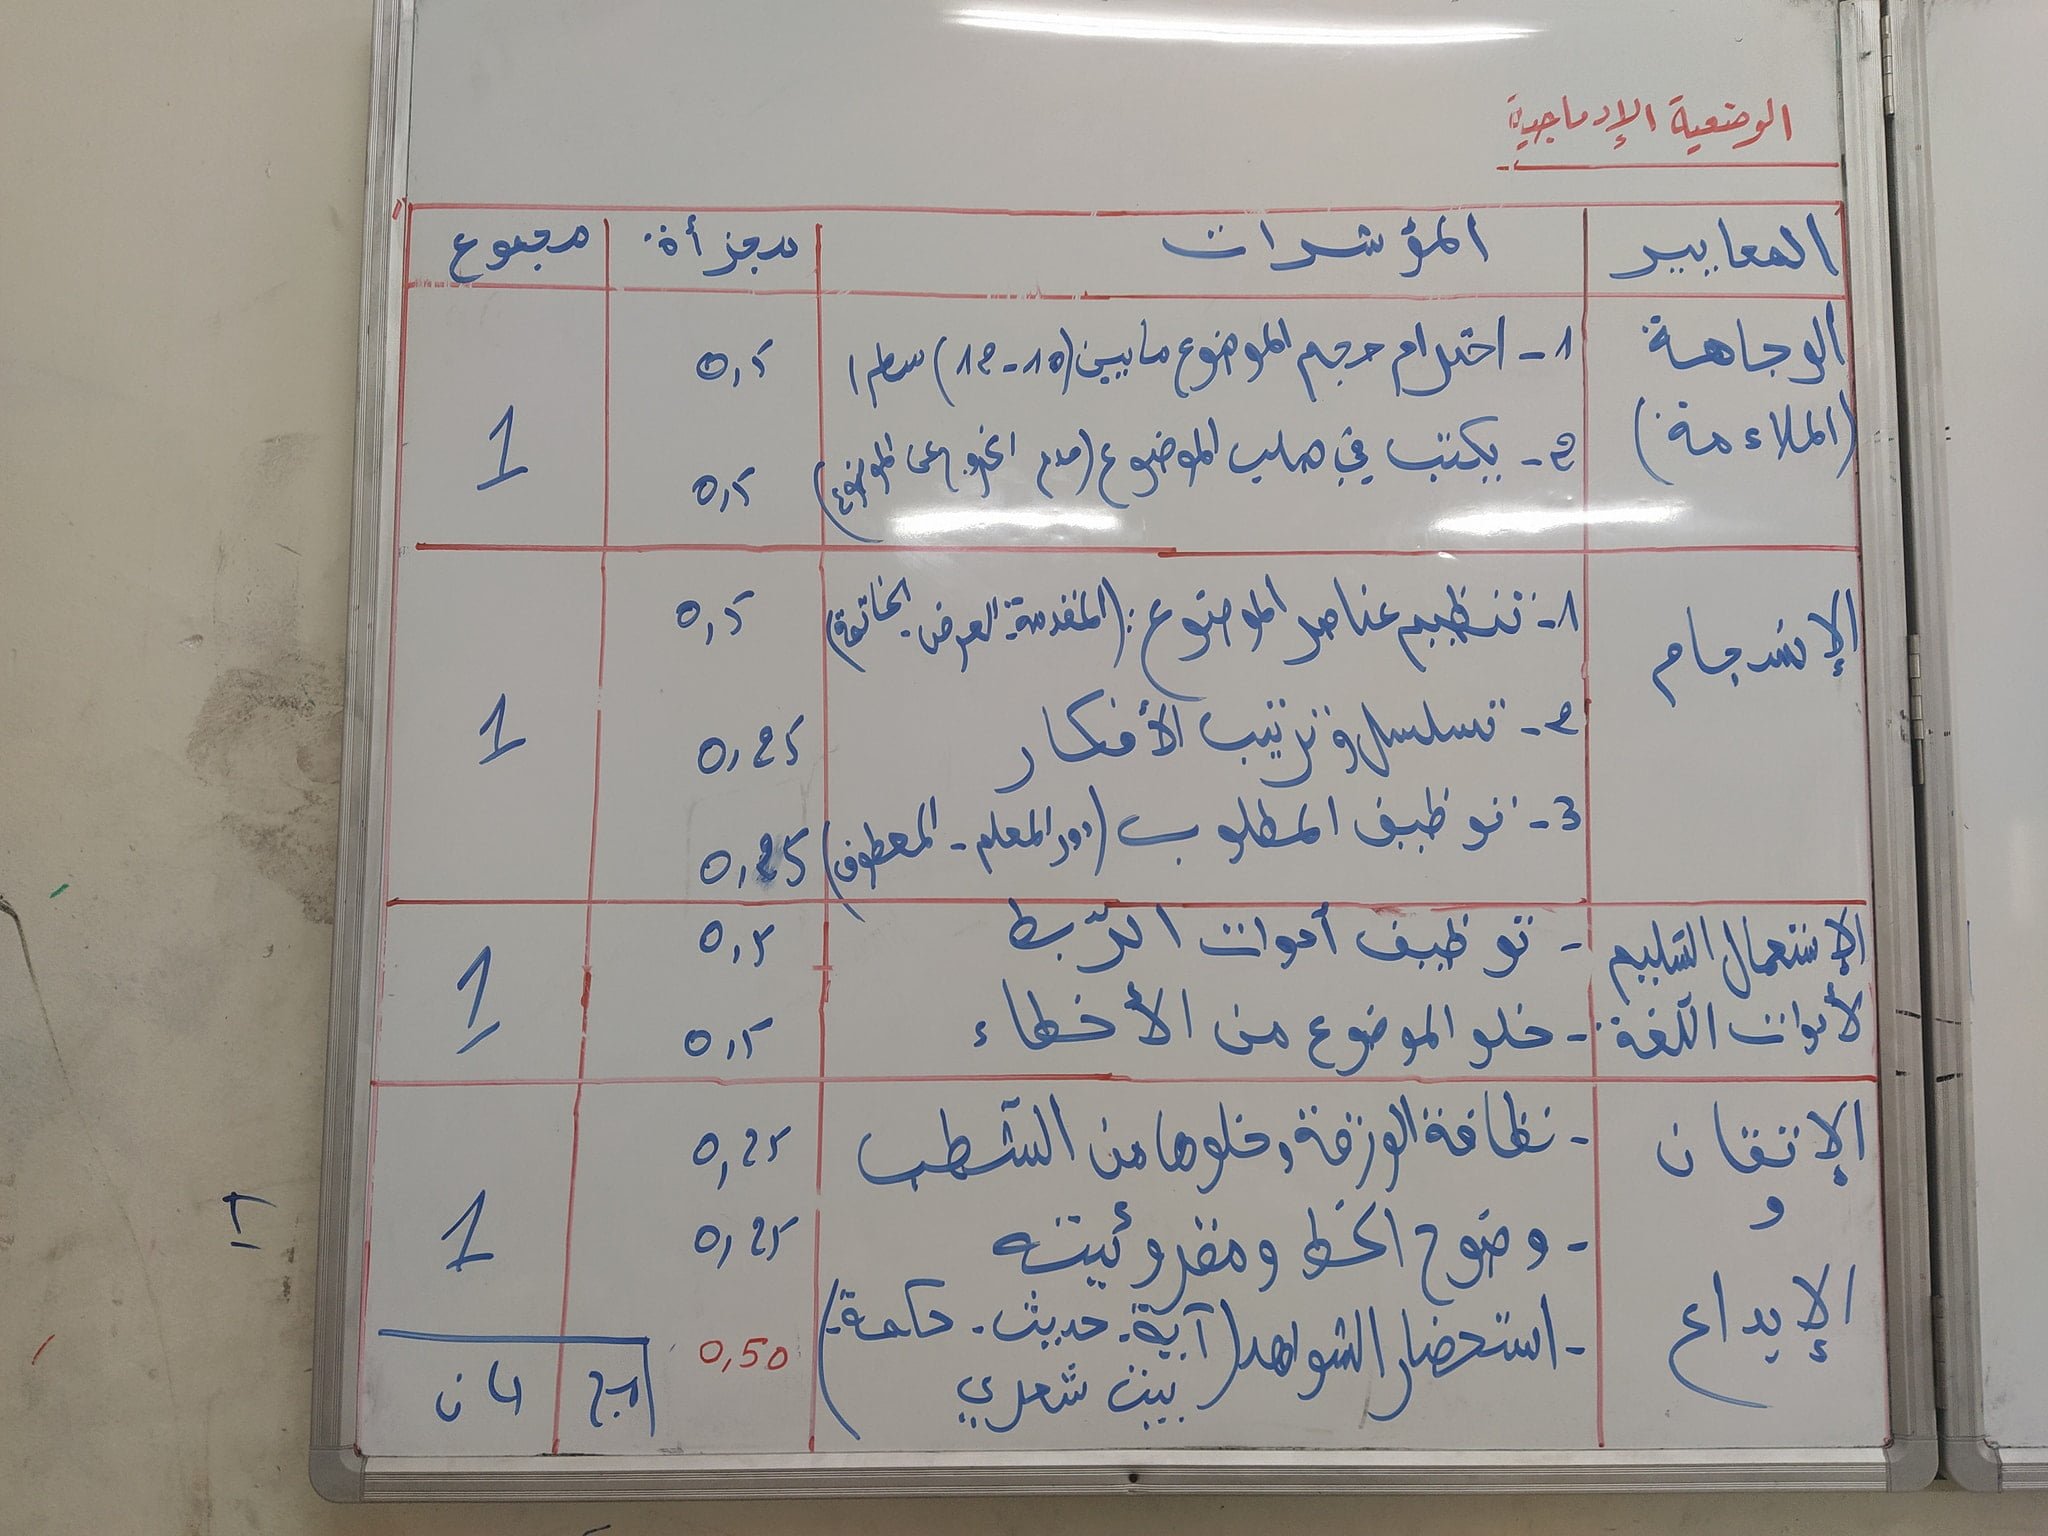 تصحيح امتحان شهادة نهاية مرحلة التعليم الابتدائي التصحيح النموذجي: اللغة العربية 18